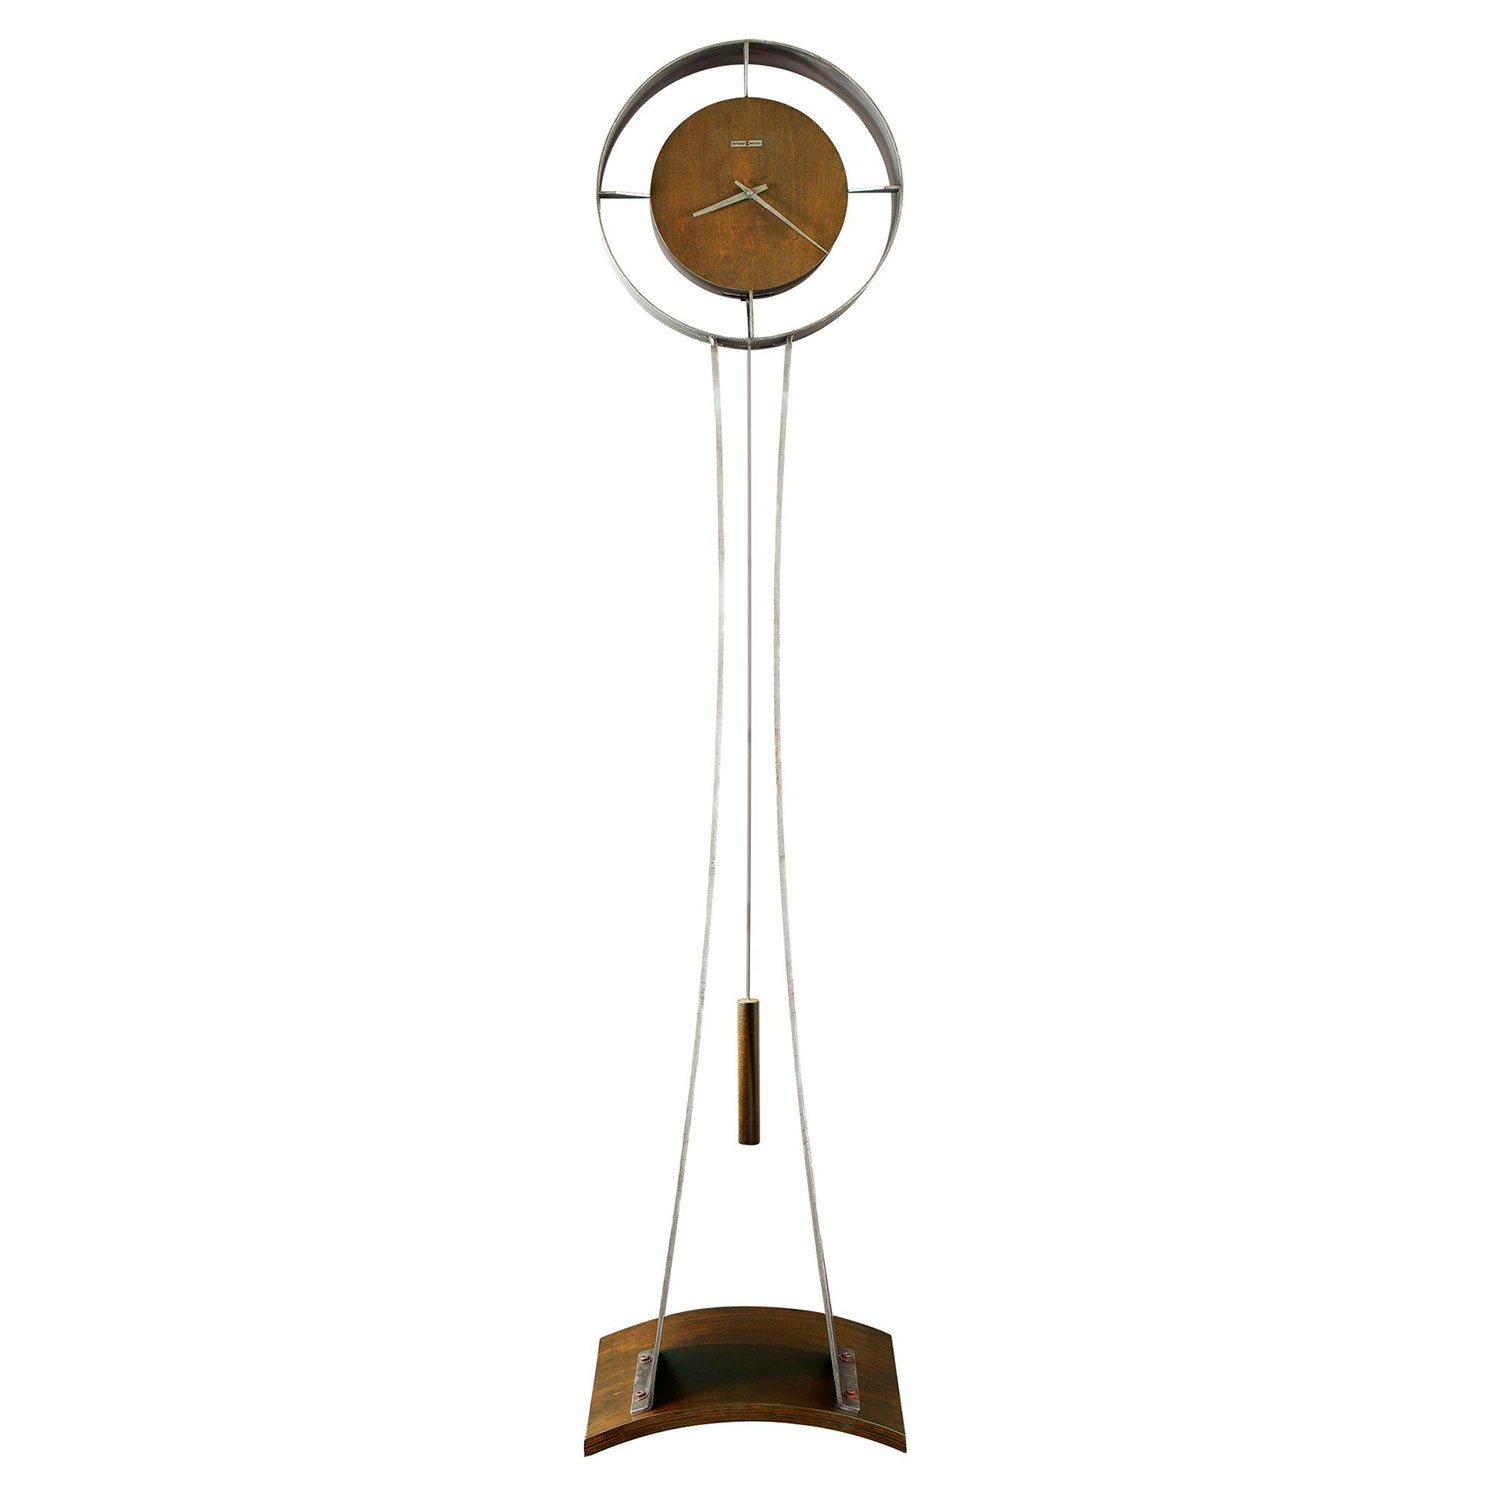 Напольные часы Howard miller 615-108 вешалка вудпекер элит бук 42 см х 6 см грецкий орех